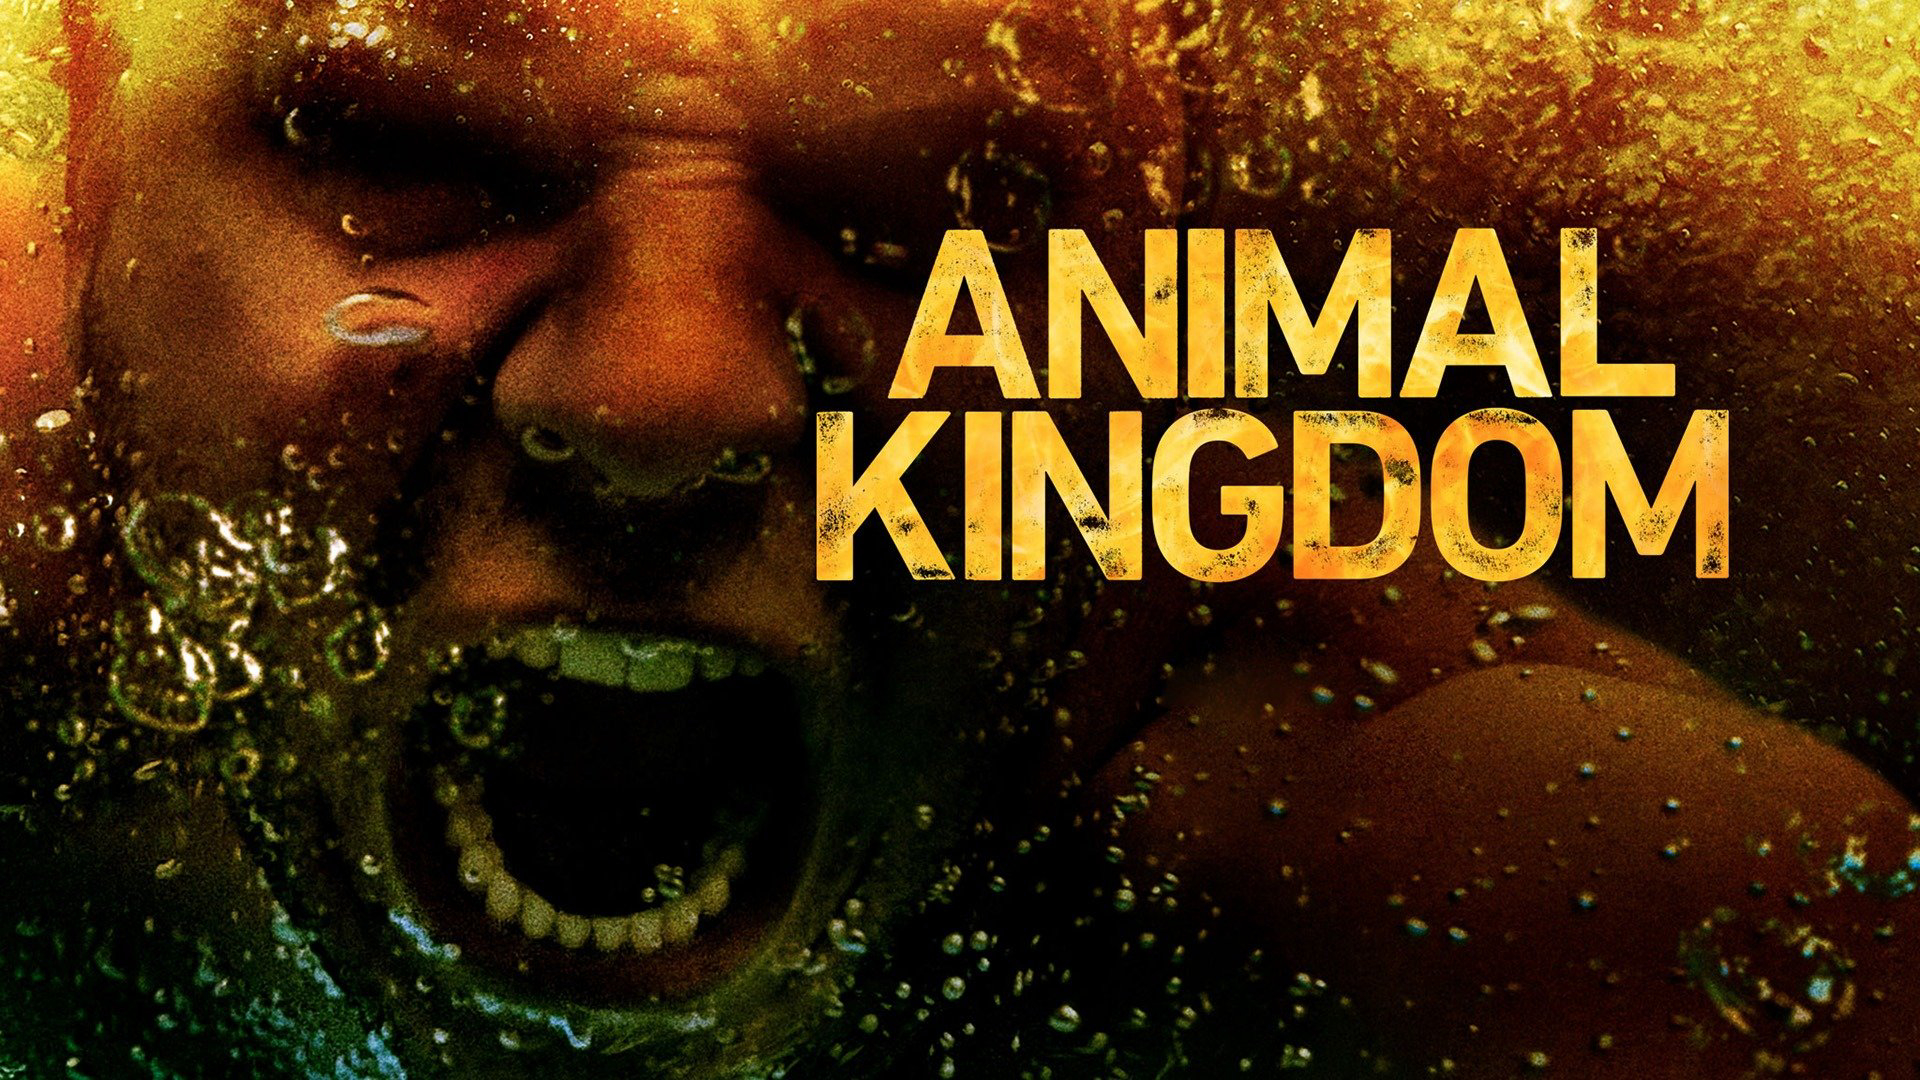 Animal Kingdom (Season 3) / Animal Kingdom (Season 3) (2018)